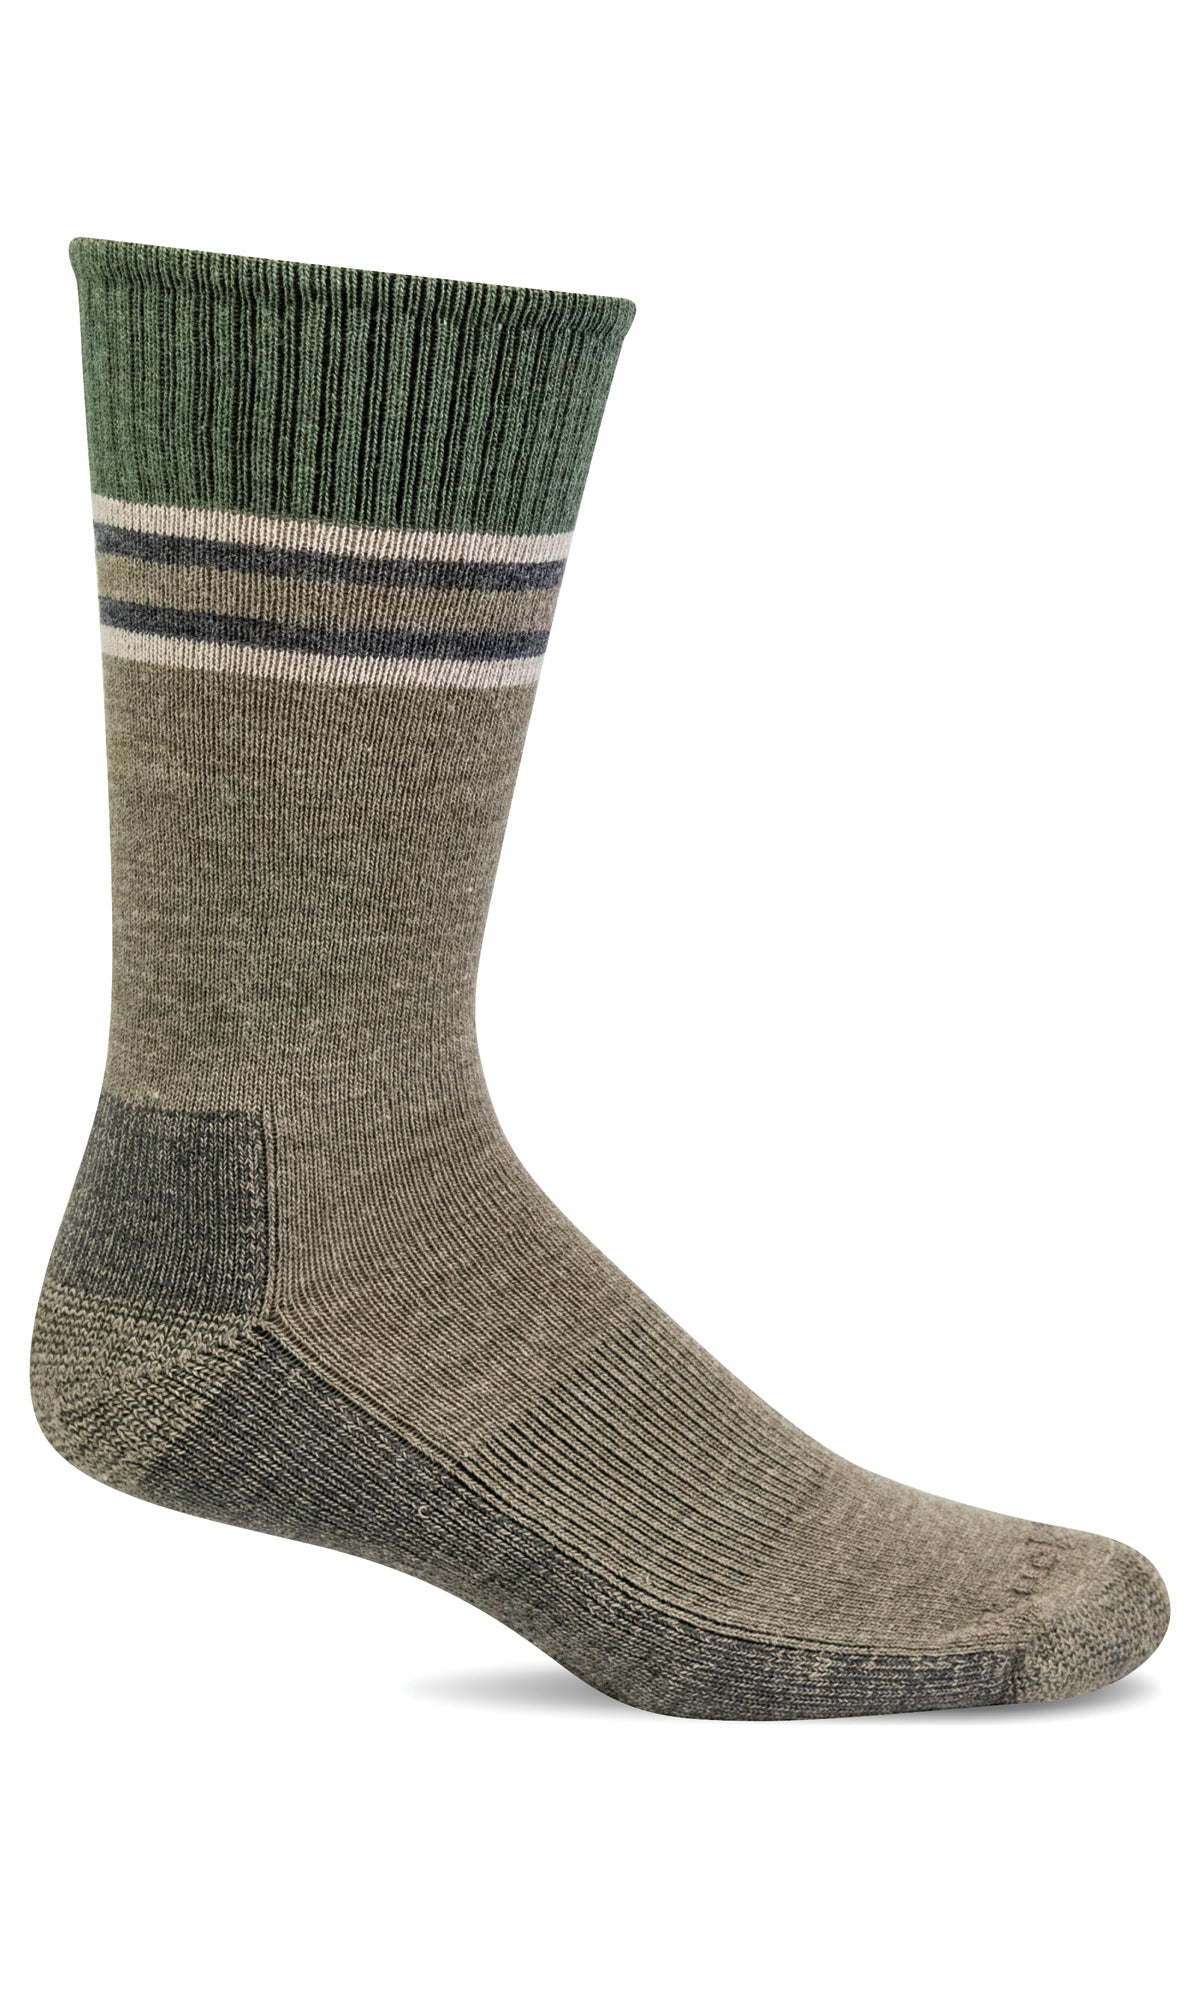 Men's Canyon III | Essential Comfort Socks - Merino Wool Essential Comfort - Sockwell